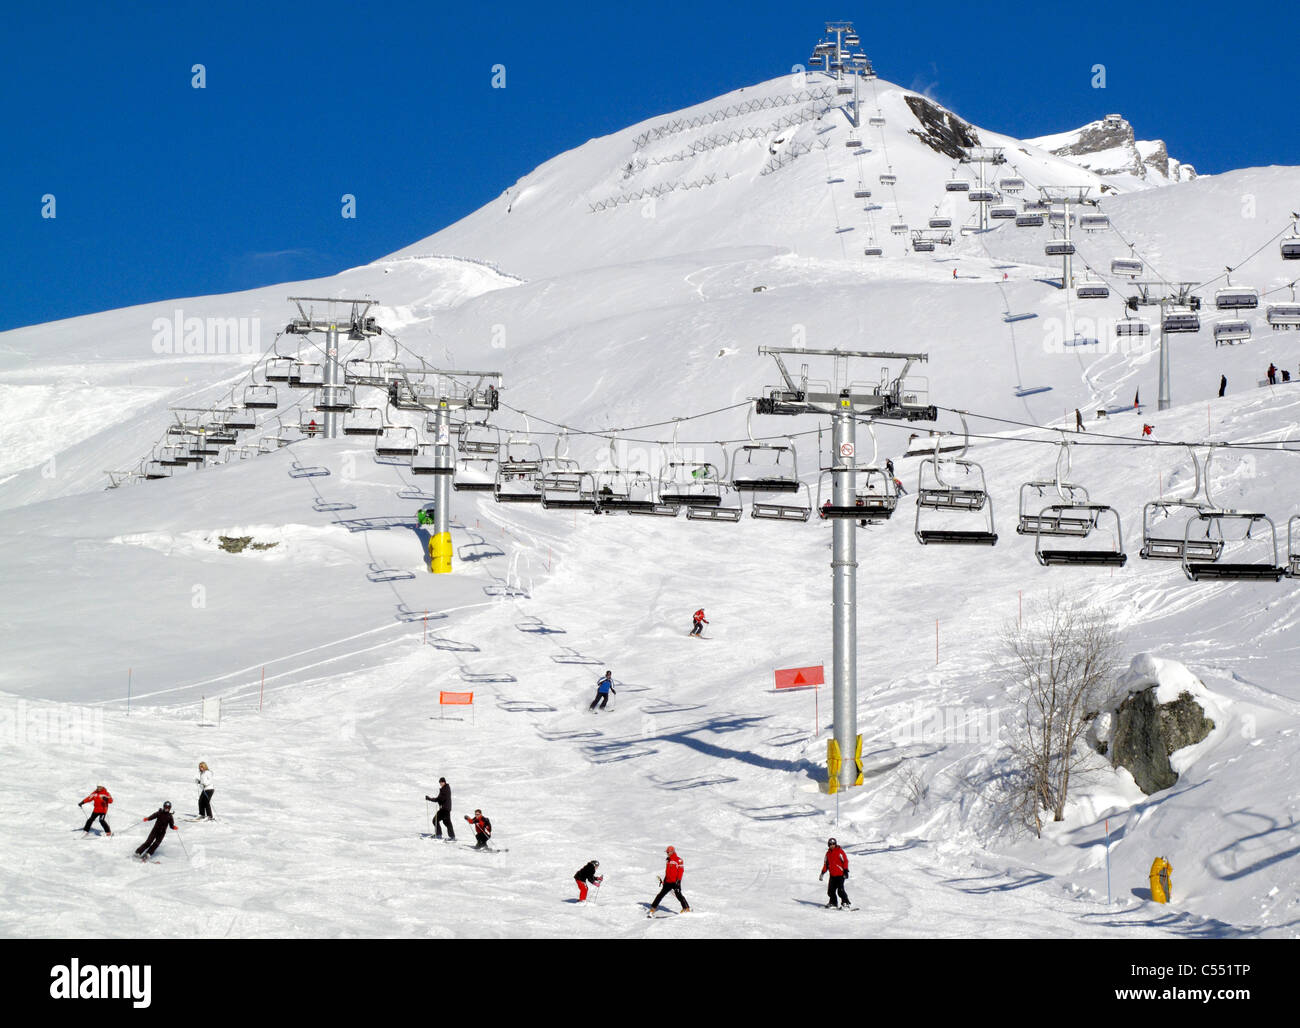 Un télésiège sur une piste de ski dans la station de ski de Cervinia dans les Alpes italiennes Banque D'Images